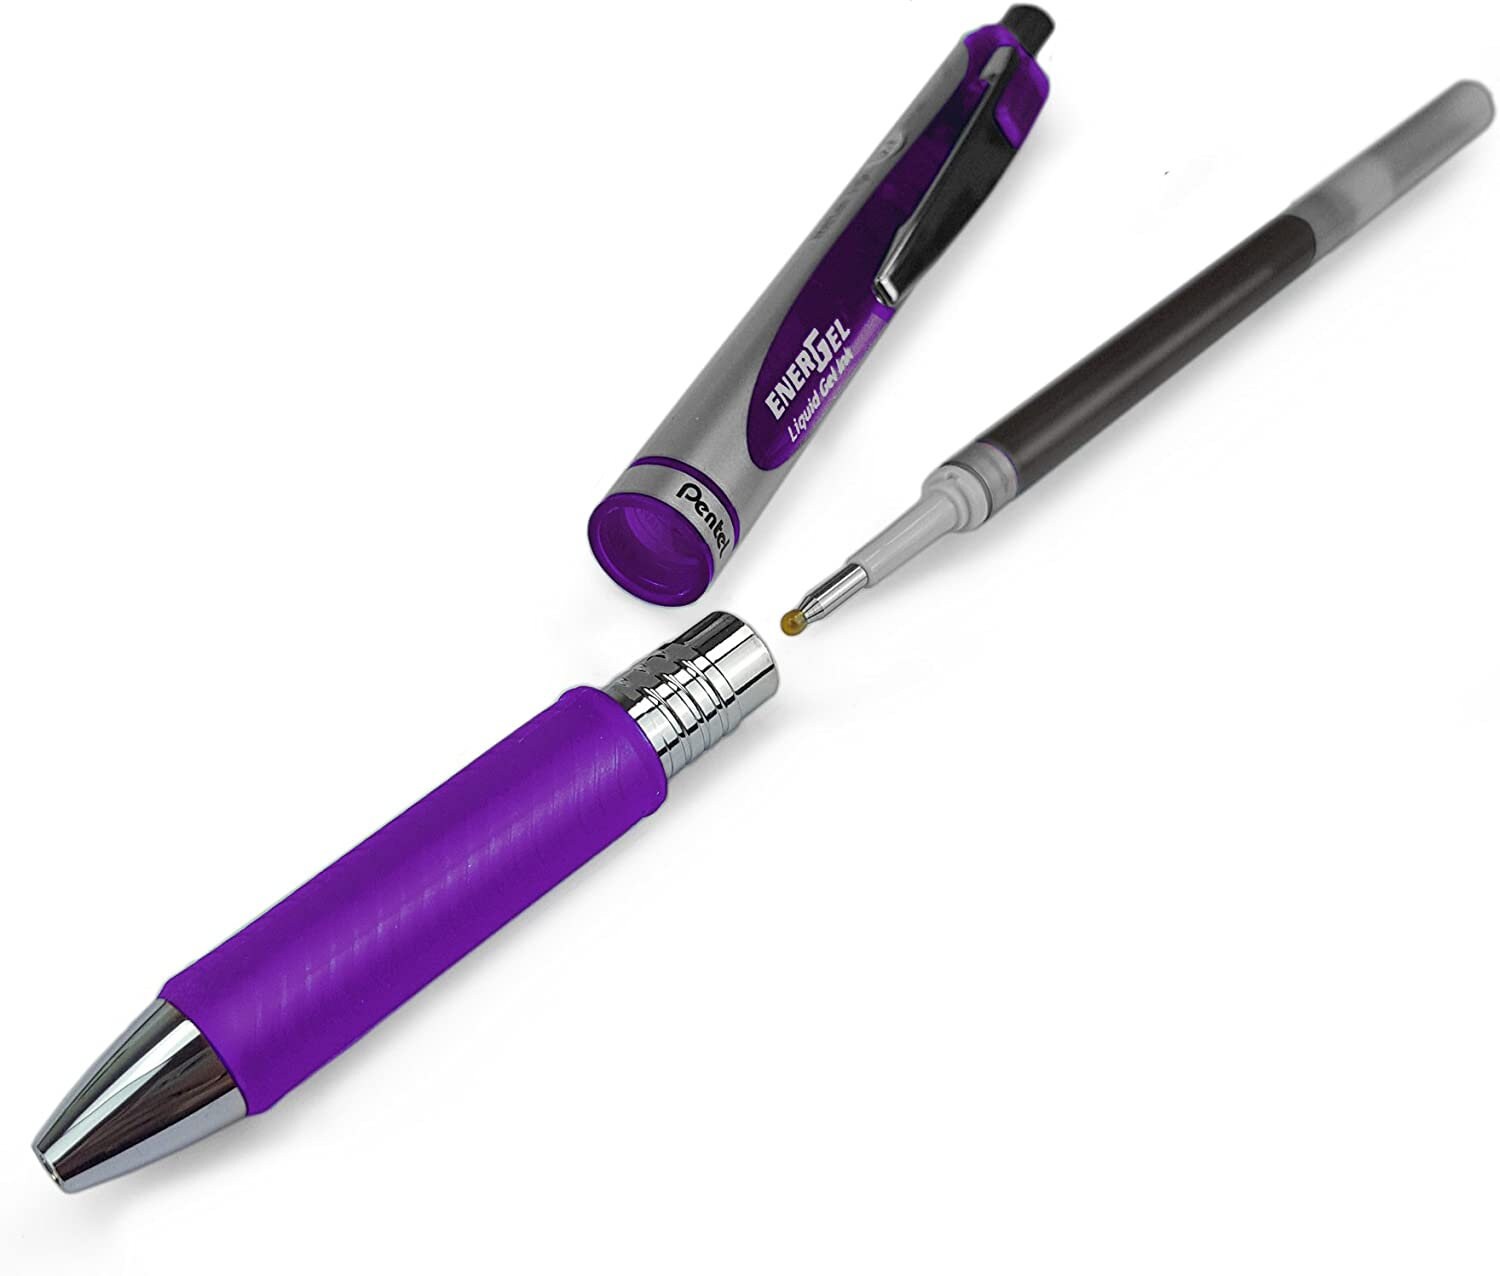 Pentel Refill Ink for EnerGel and Lancelot Gel Pen, 0.7mm Metal Tip, Sky  Blue Ink, Pack of 12 (LR7-S)